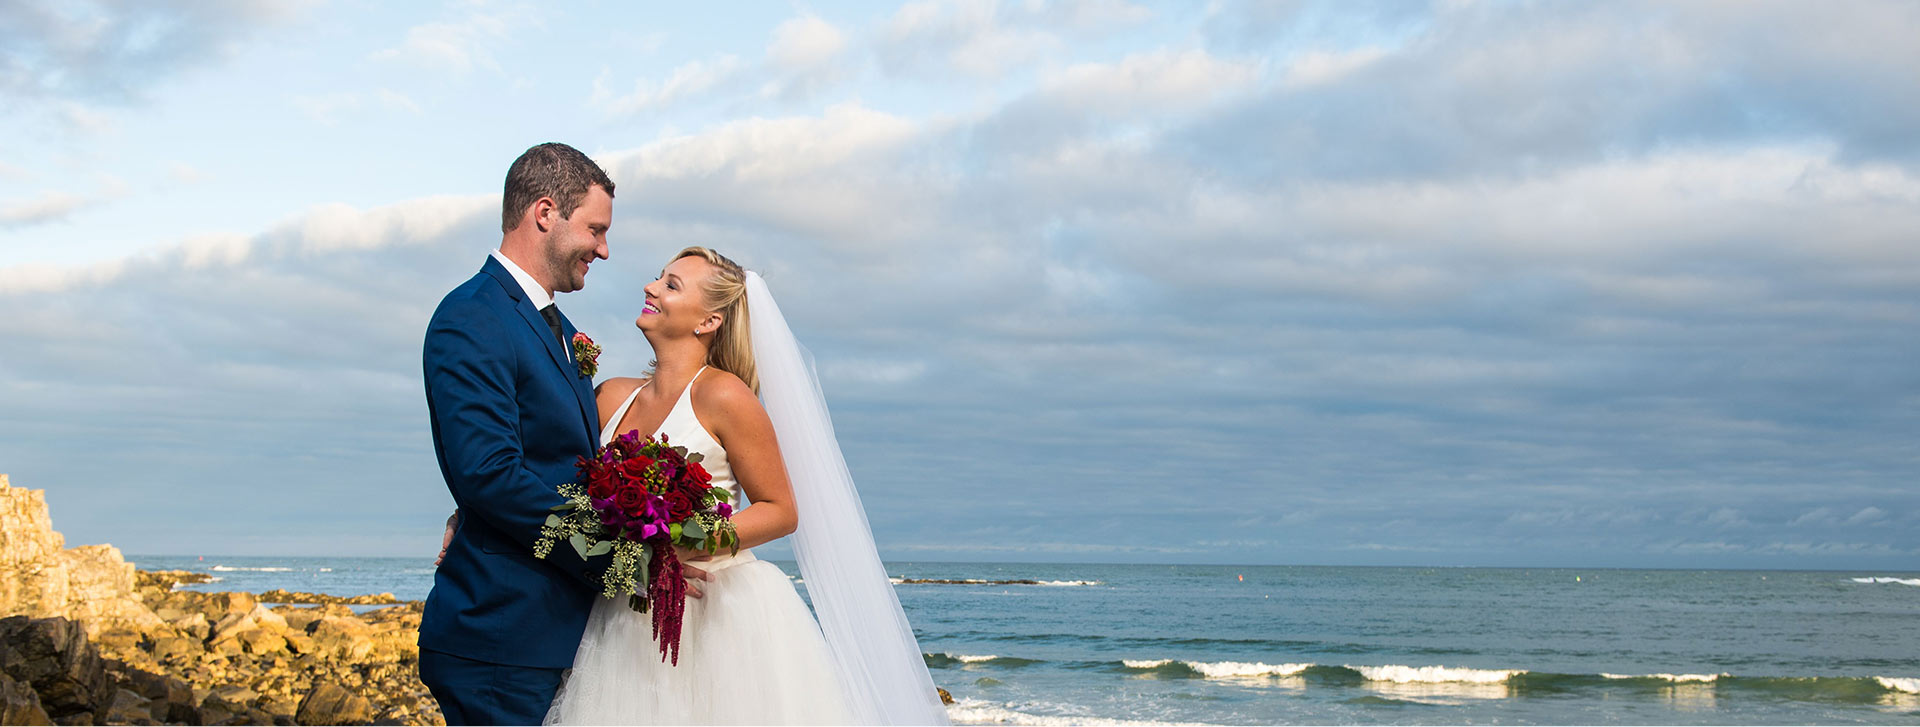 An oceanfront wedding